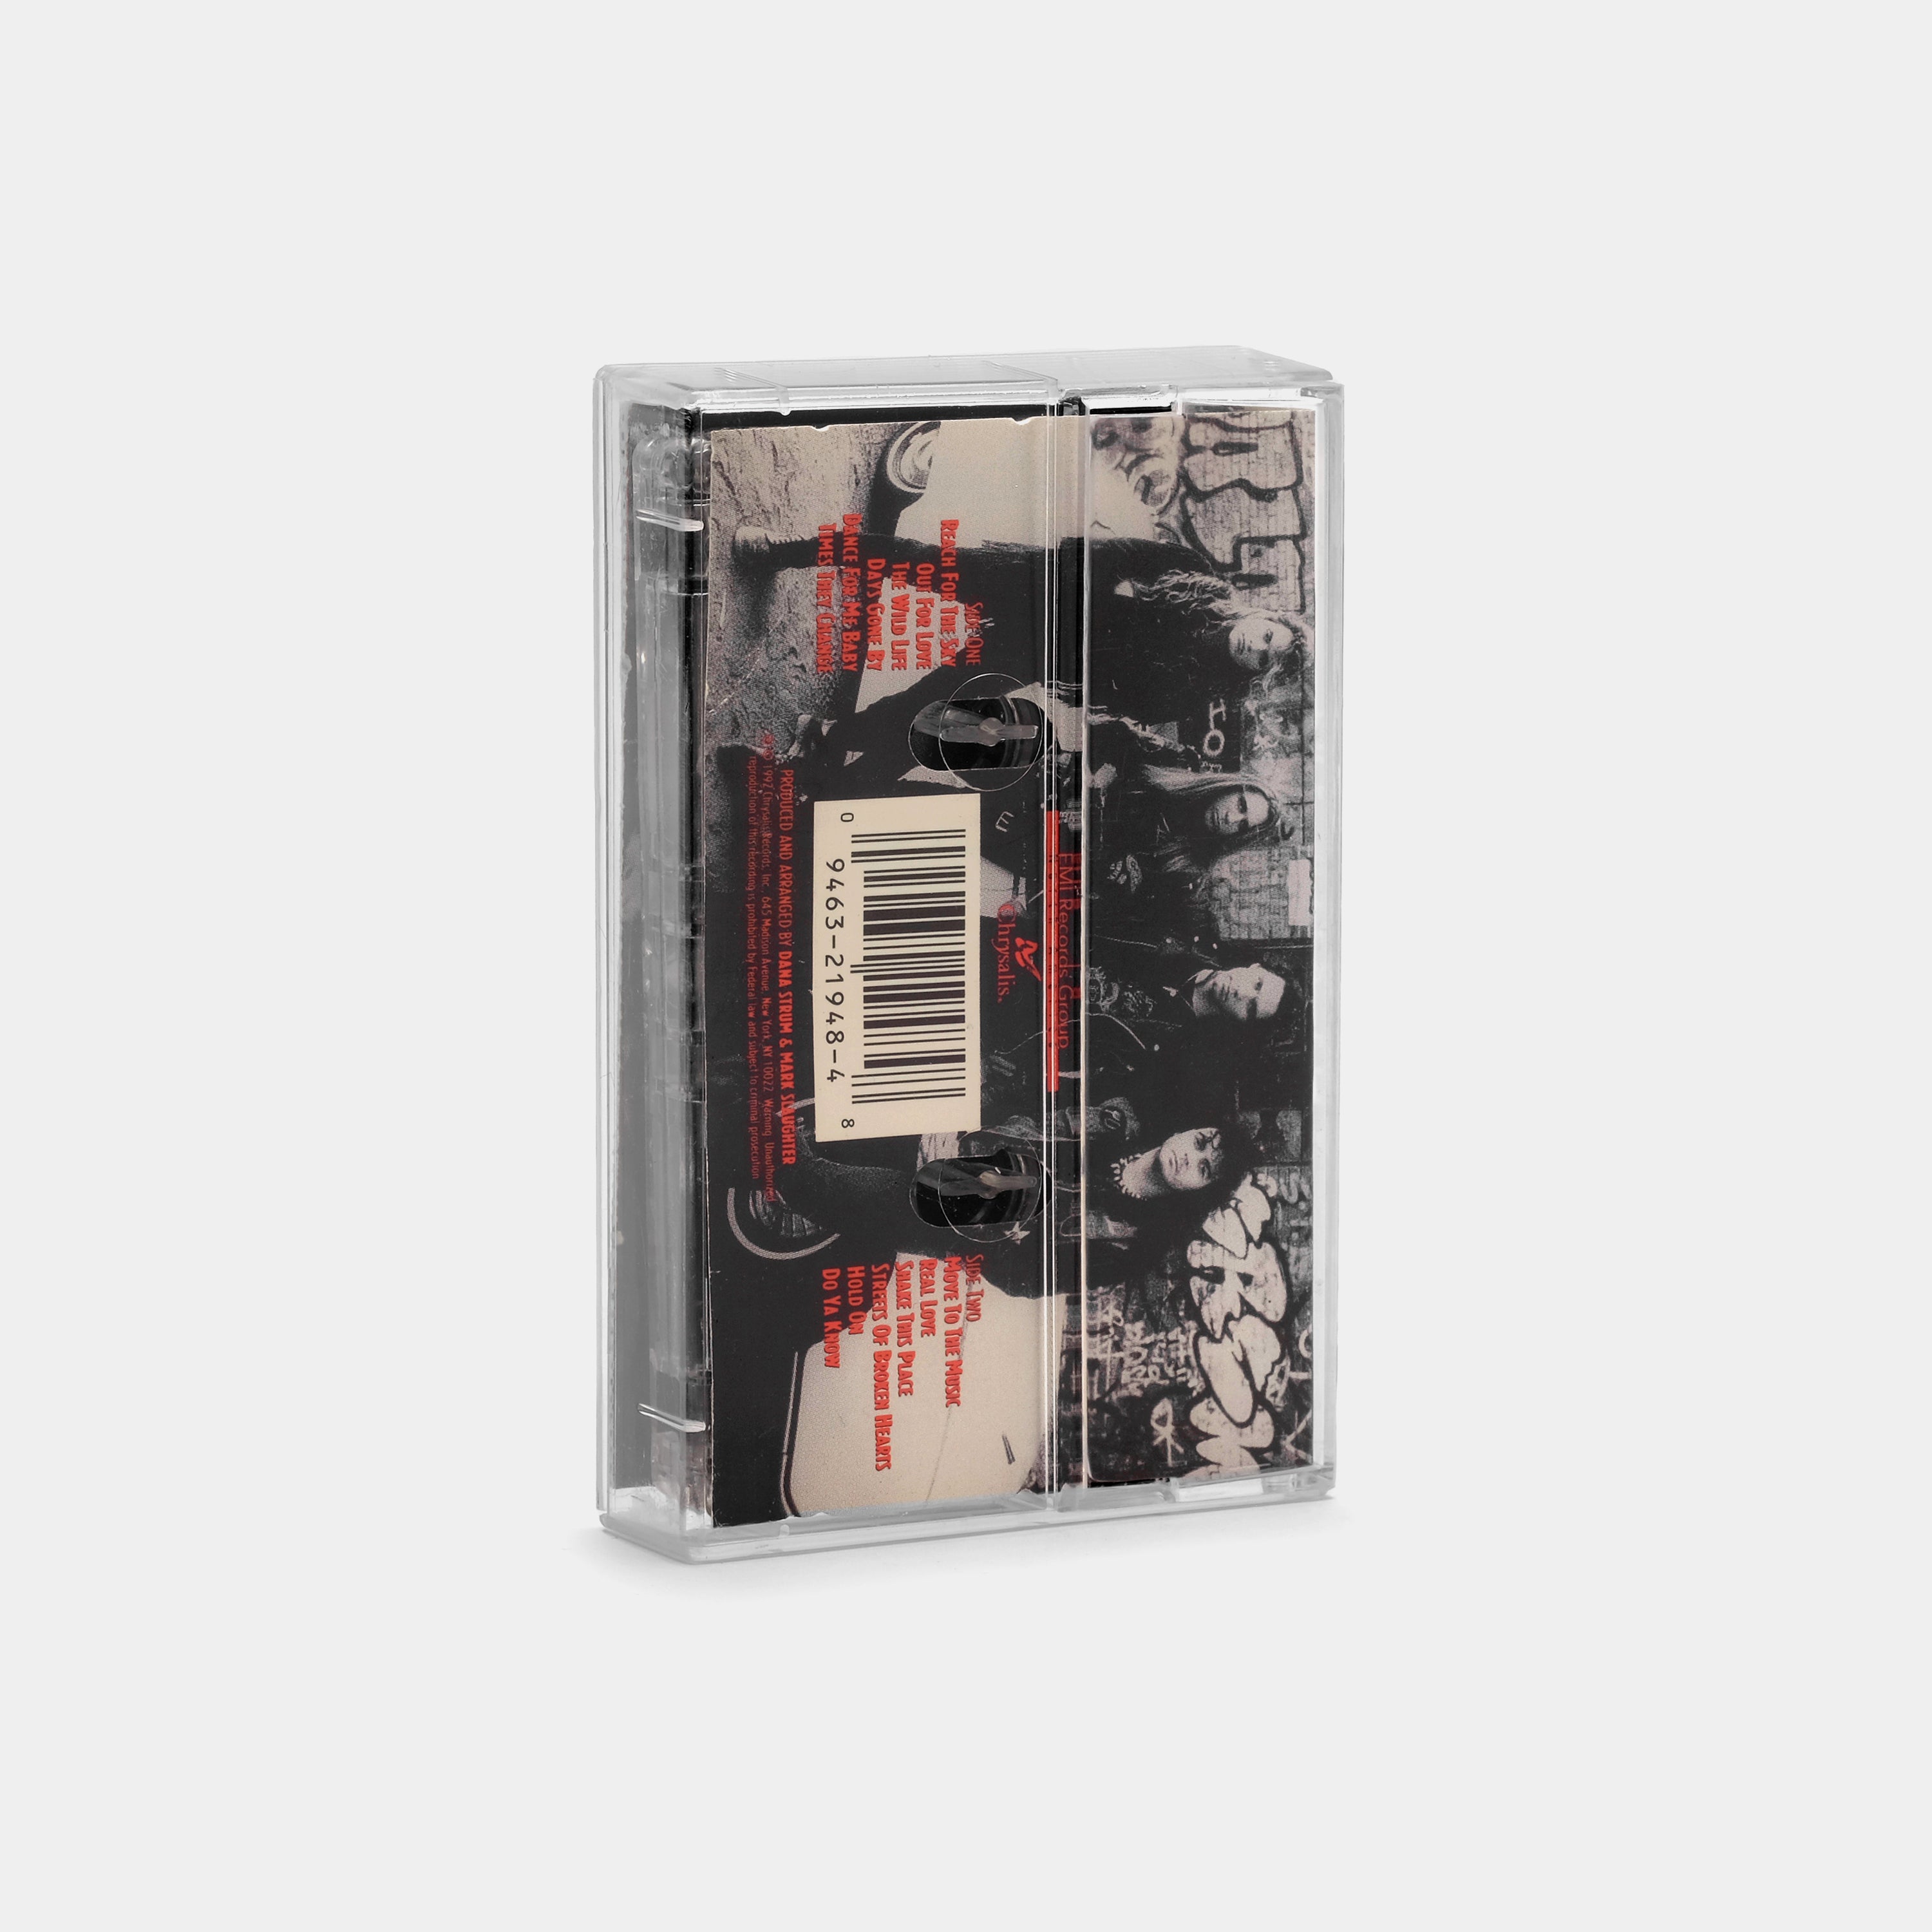 Slaughter - The Wild Life Cassette Tape